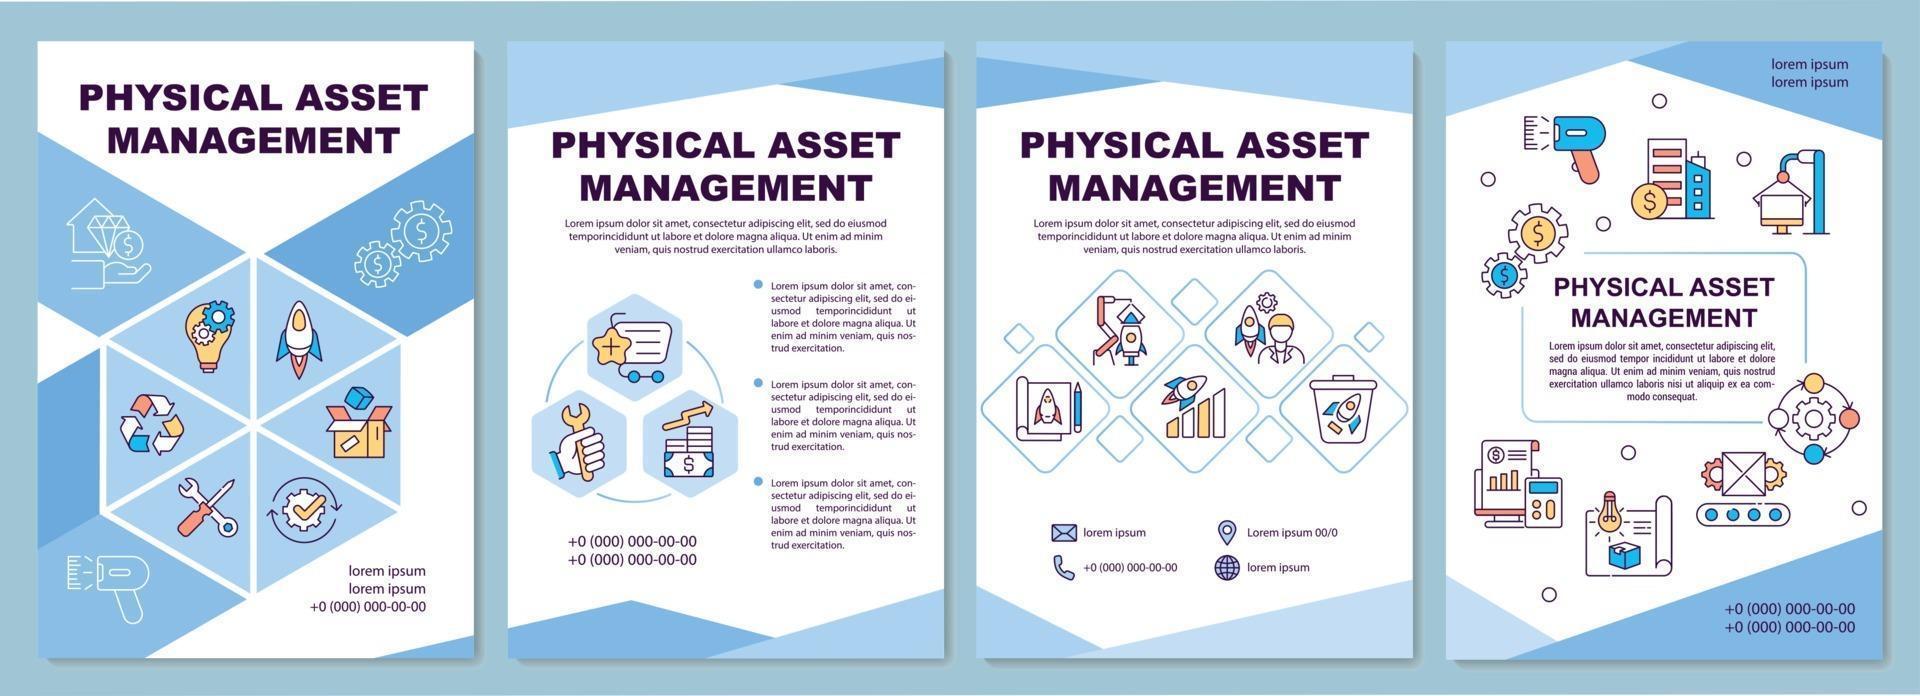 Physical asset management brochure template vector